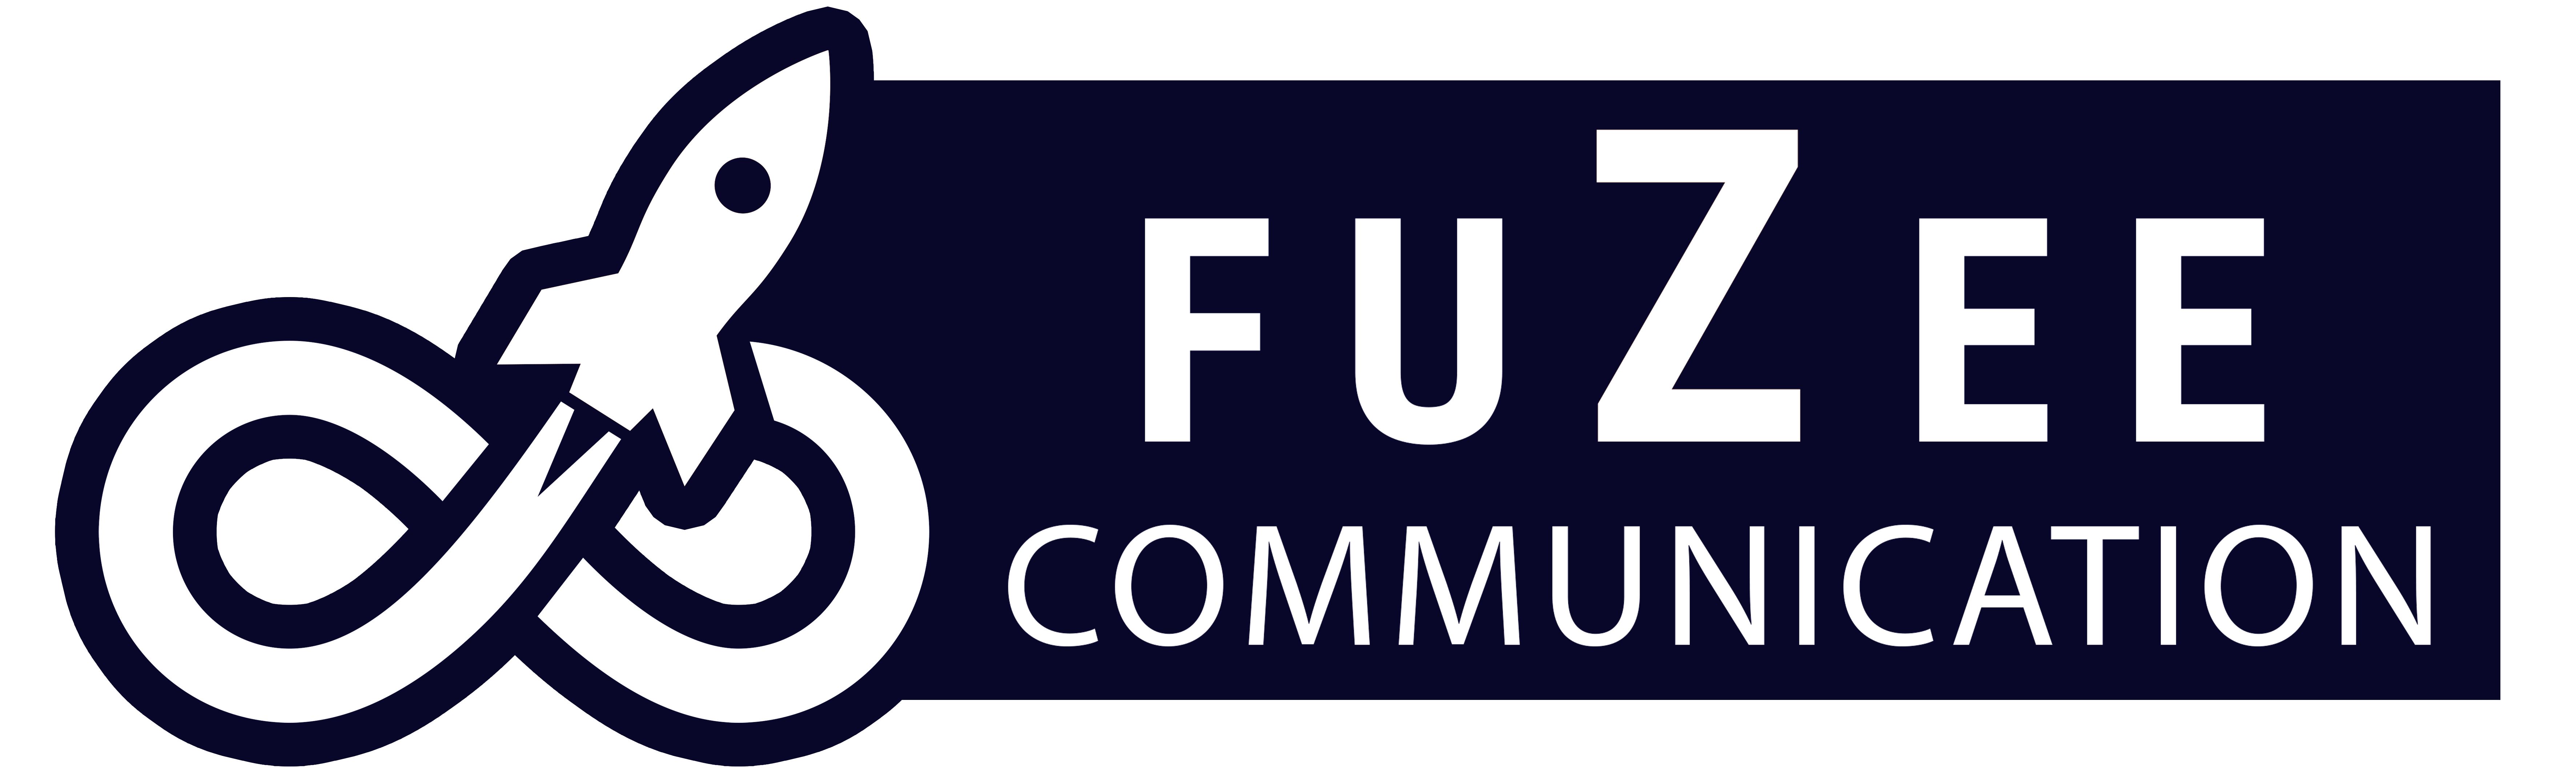 Fuzee Communication